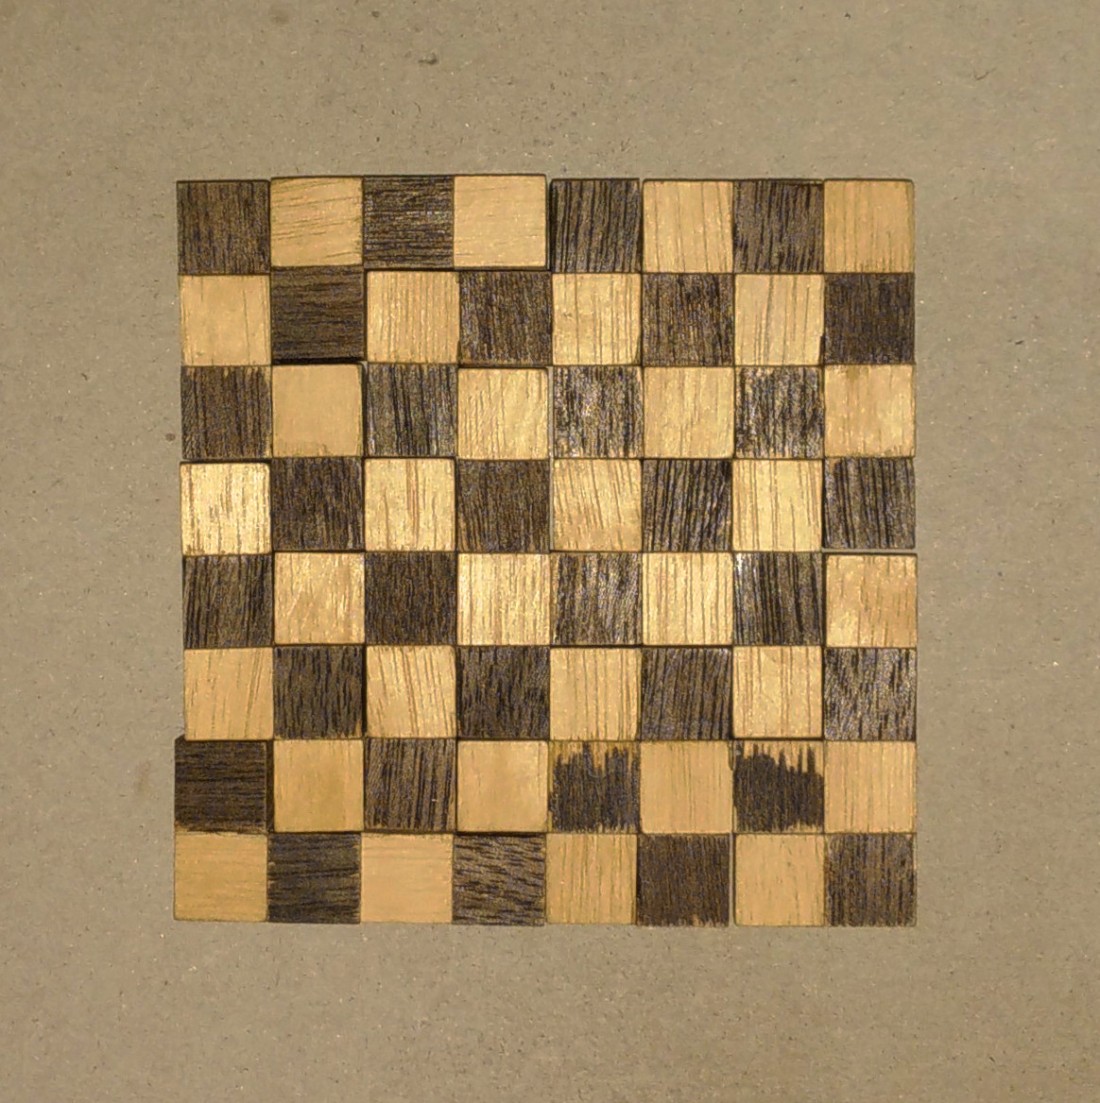 Checkerboard puzzle: aligned